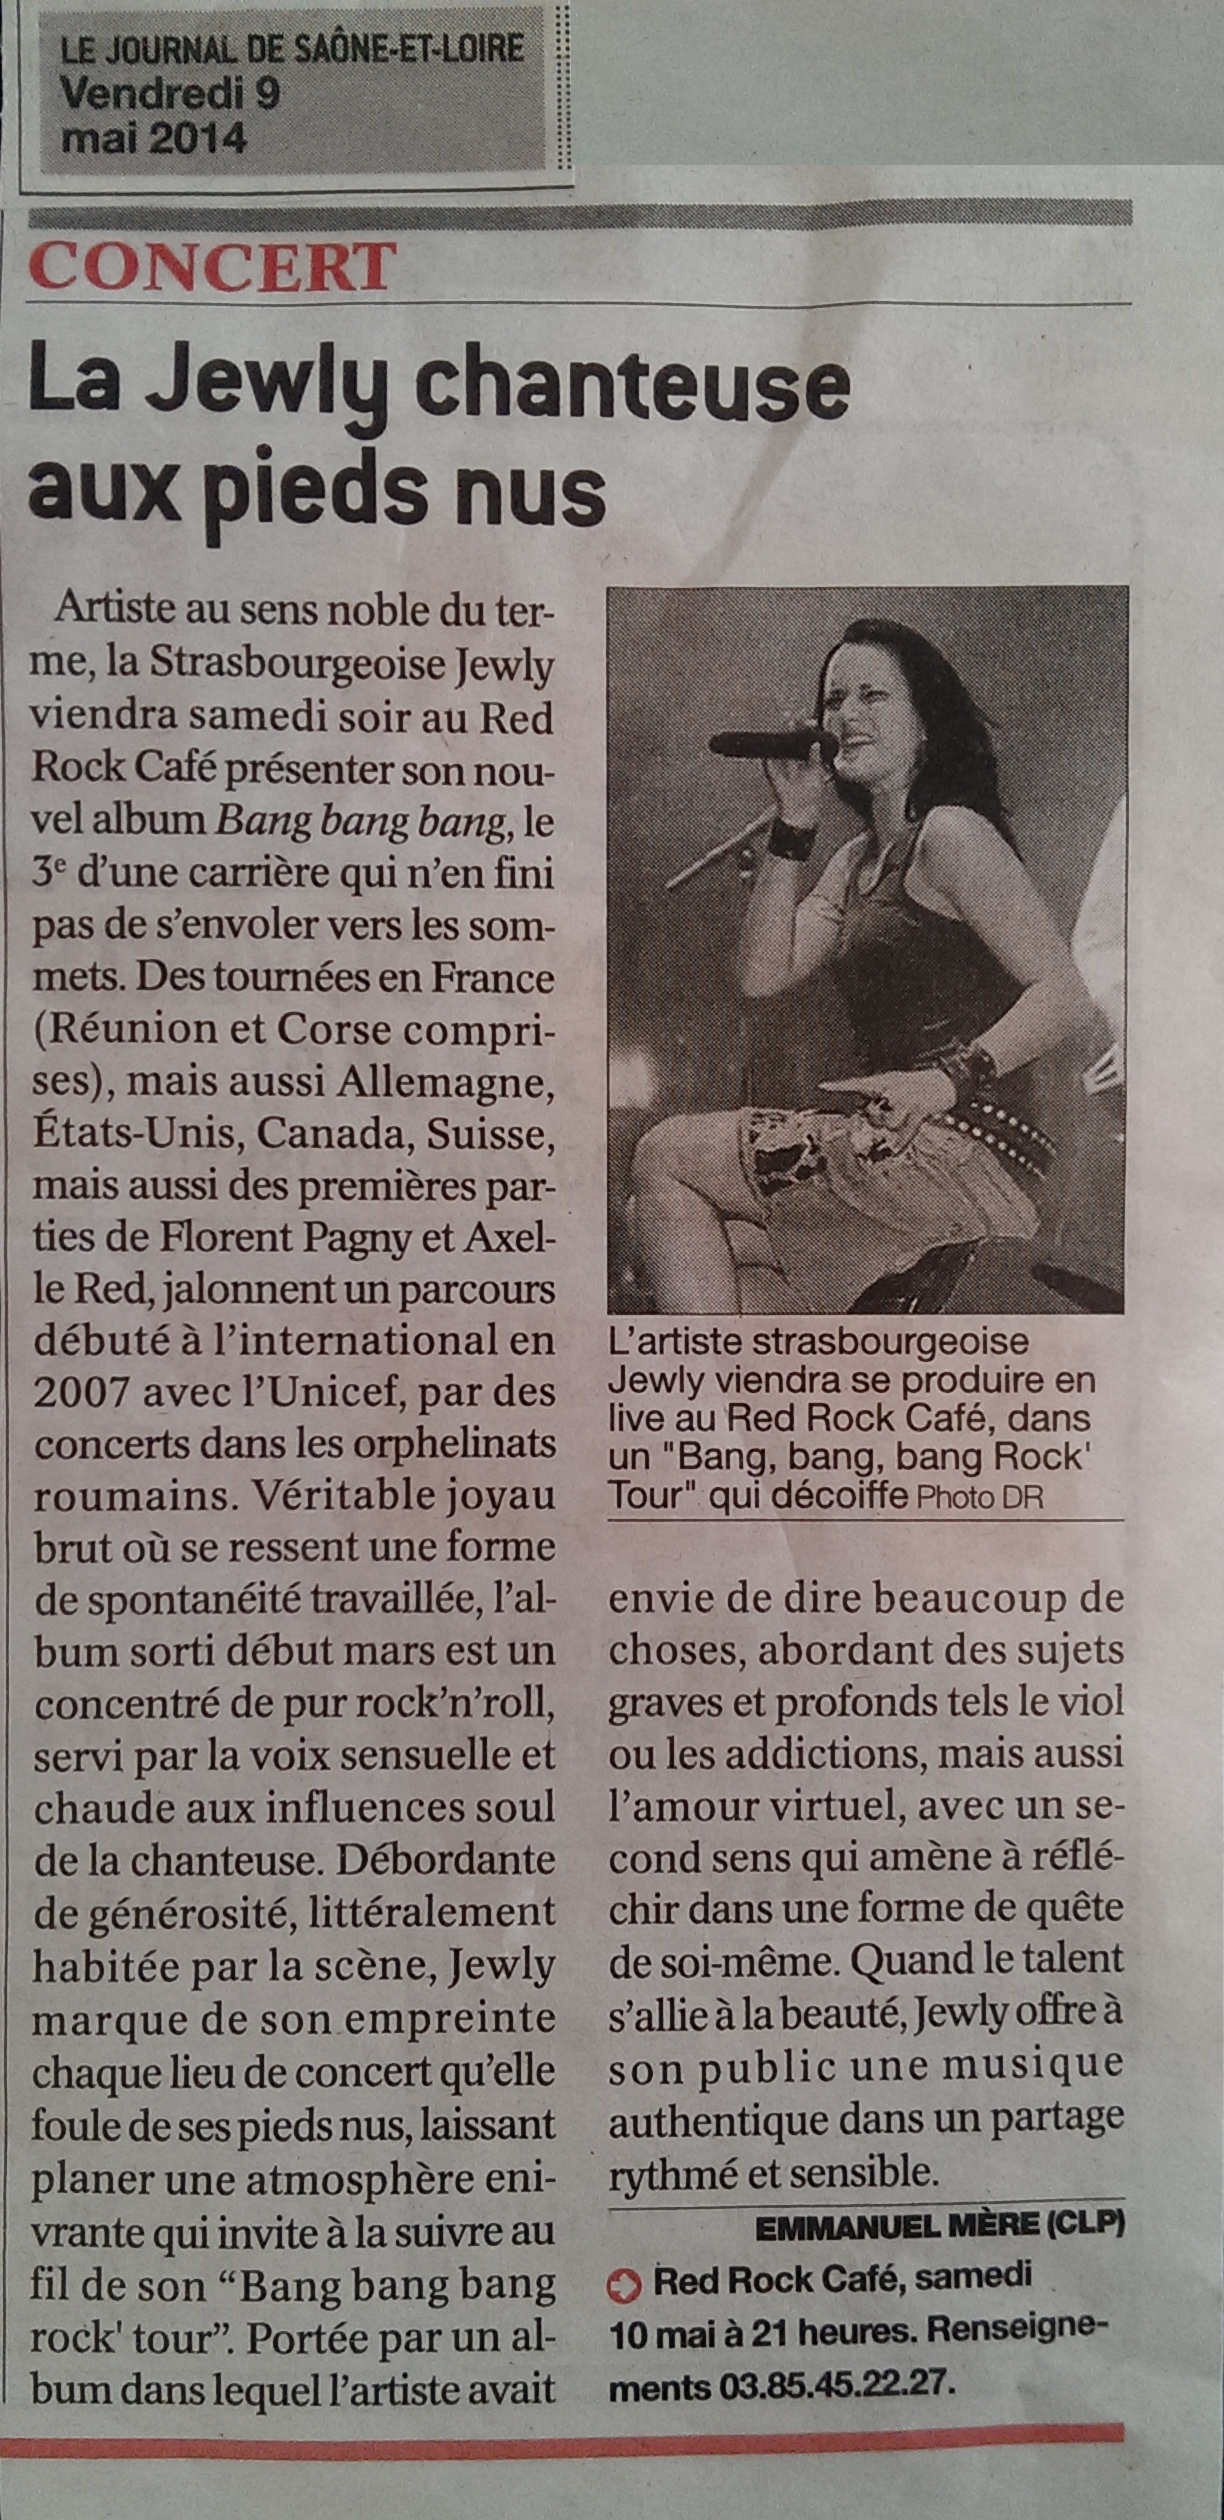 Le Journal de Saône-et-Loire – 09/05/2014